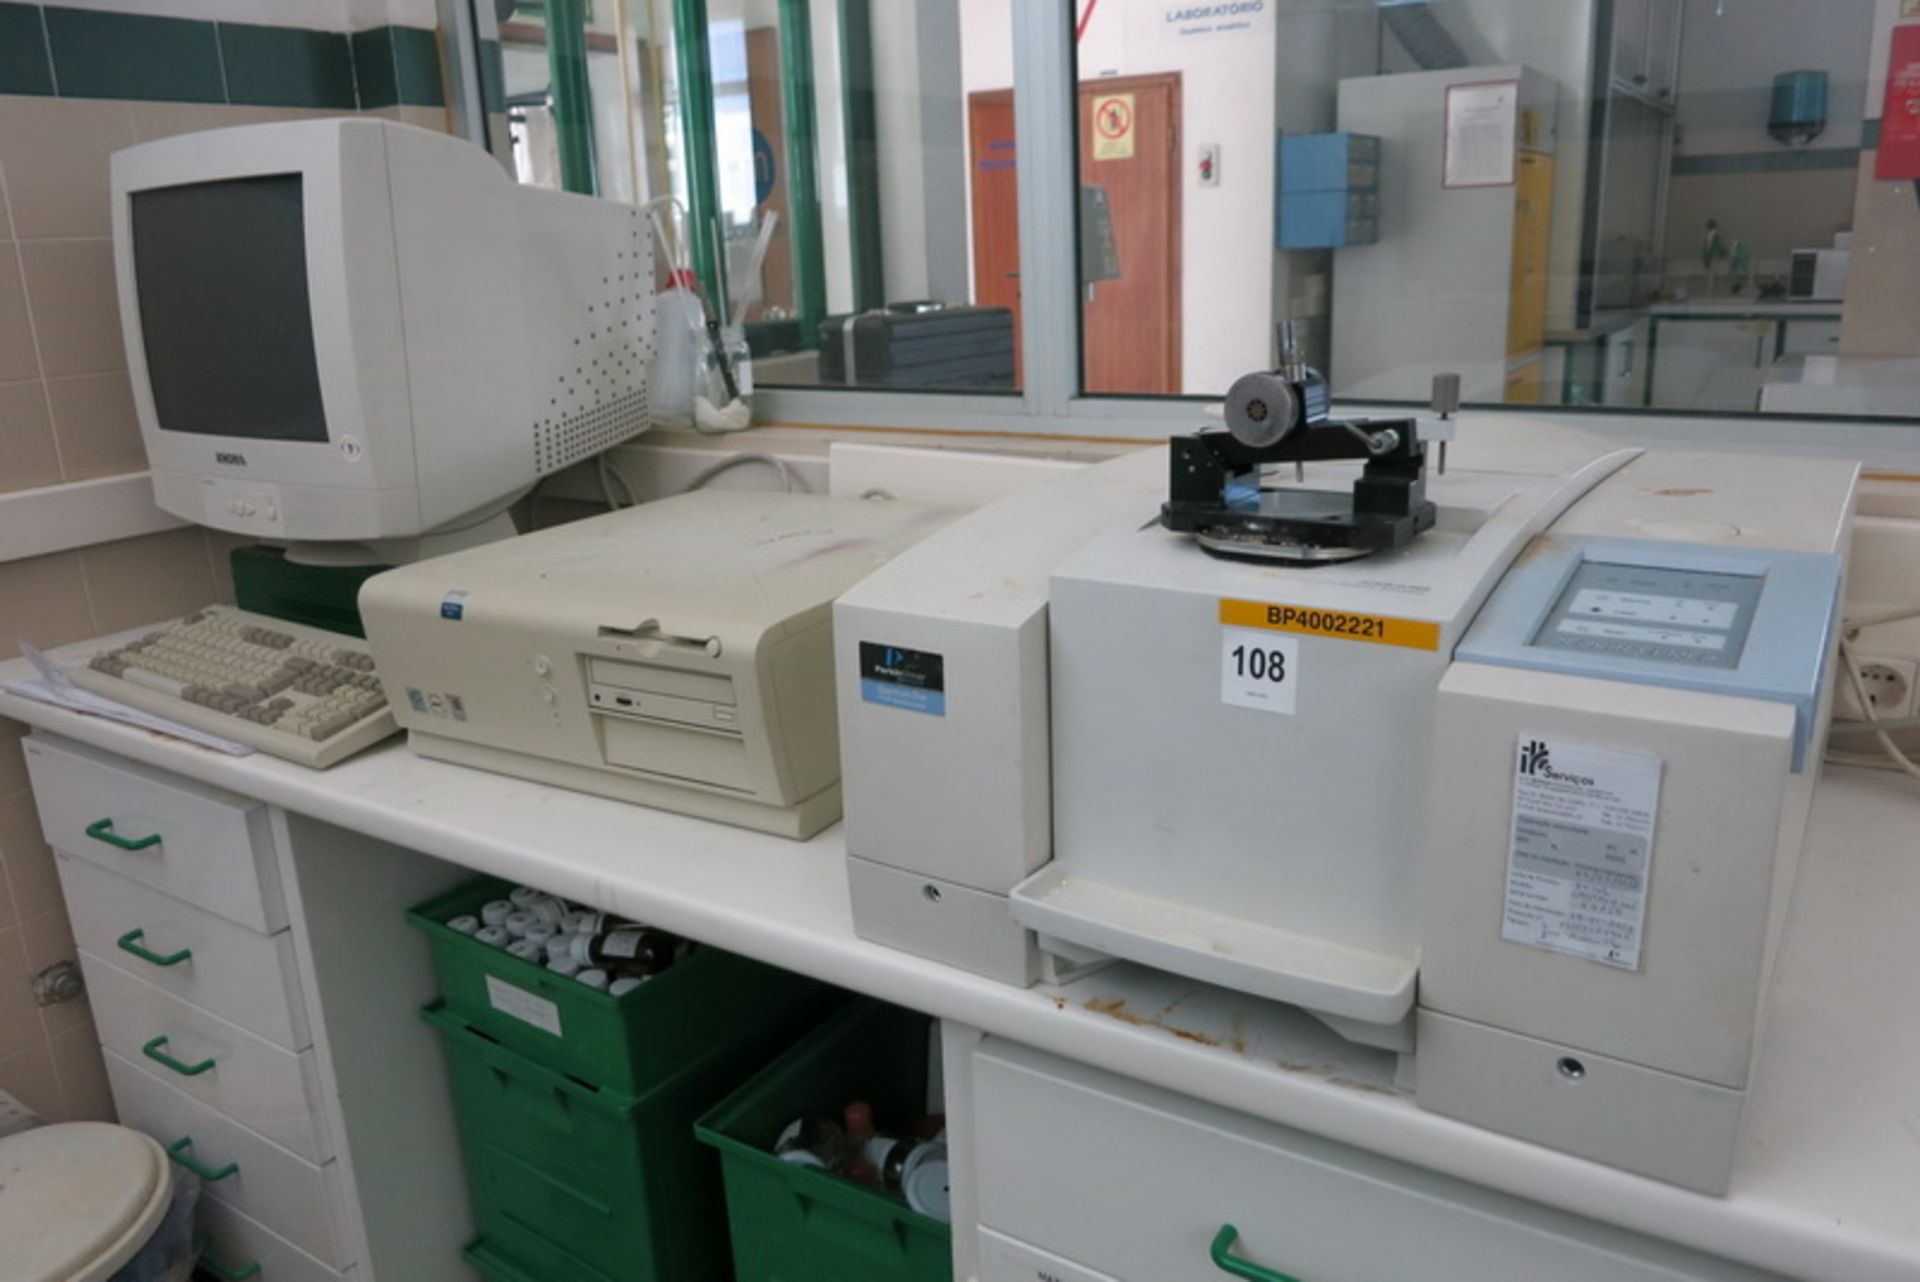 Perkin Elmer spectrometer, model Spectrum One FT-1R, s/n 6021211901, with PC